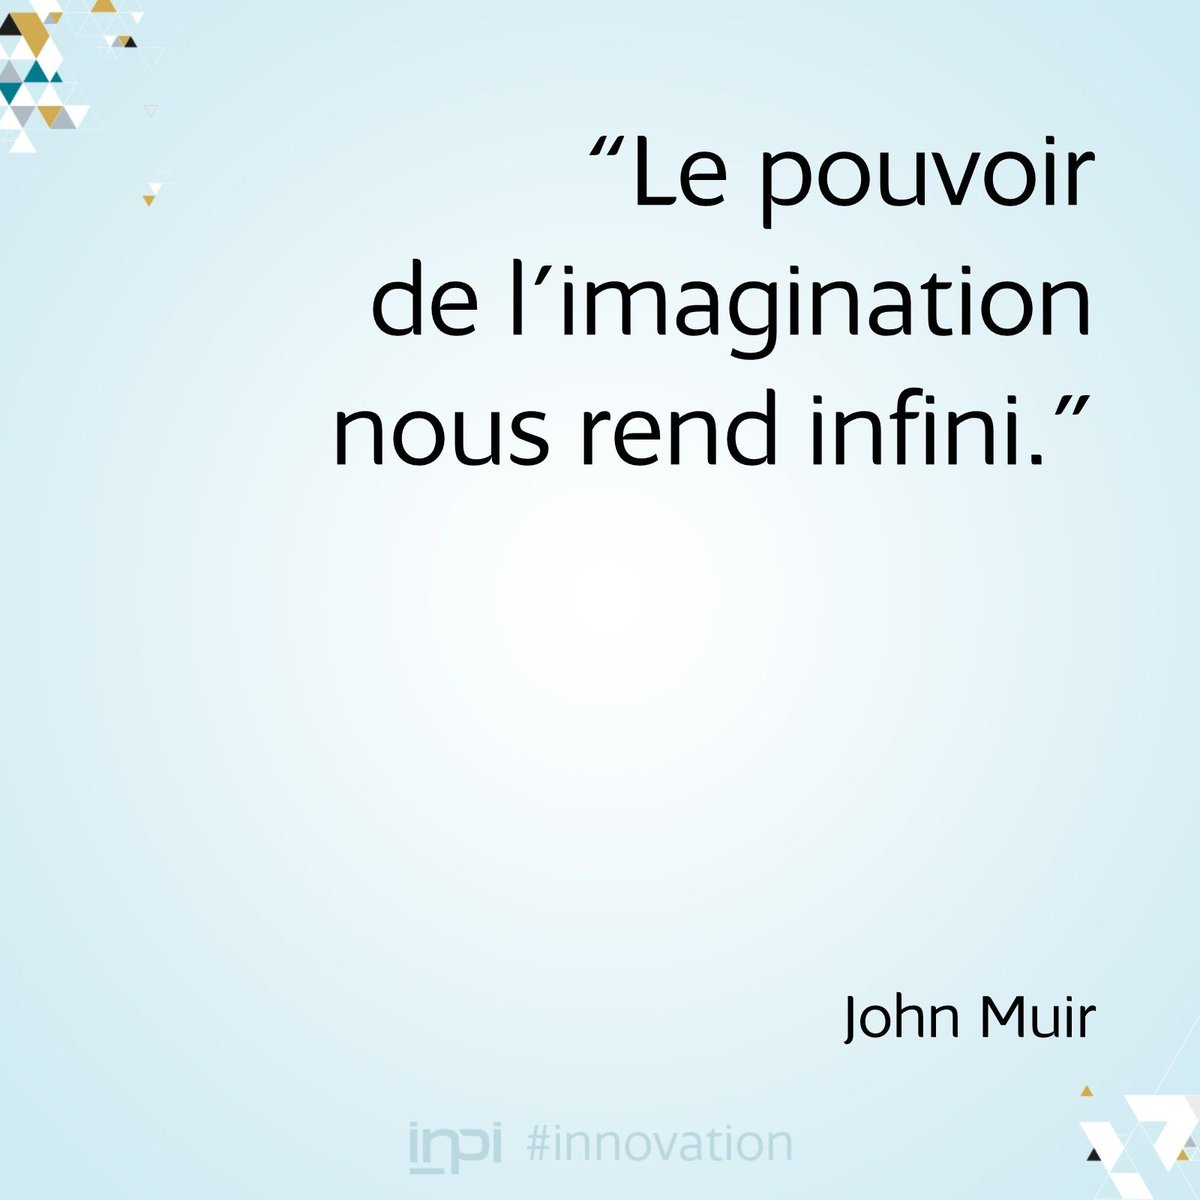 Twitter 上的inpi France Citation Et Vous Vous Y Croyez Au Pouvoir De L Imagination T Co Dtt9phzgcr Twitter